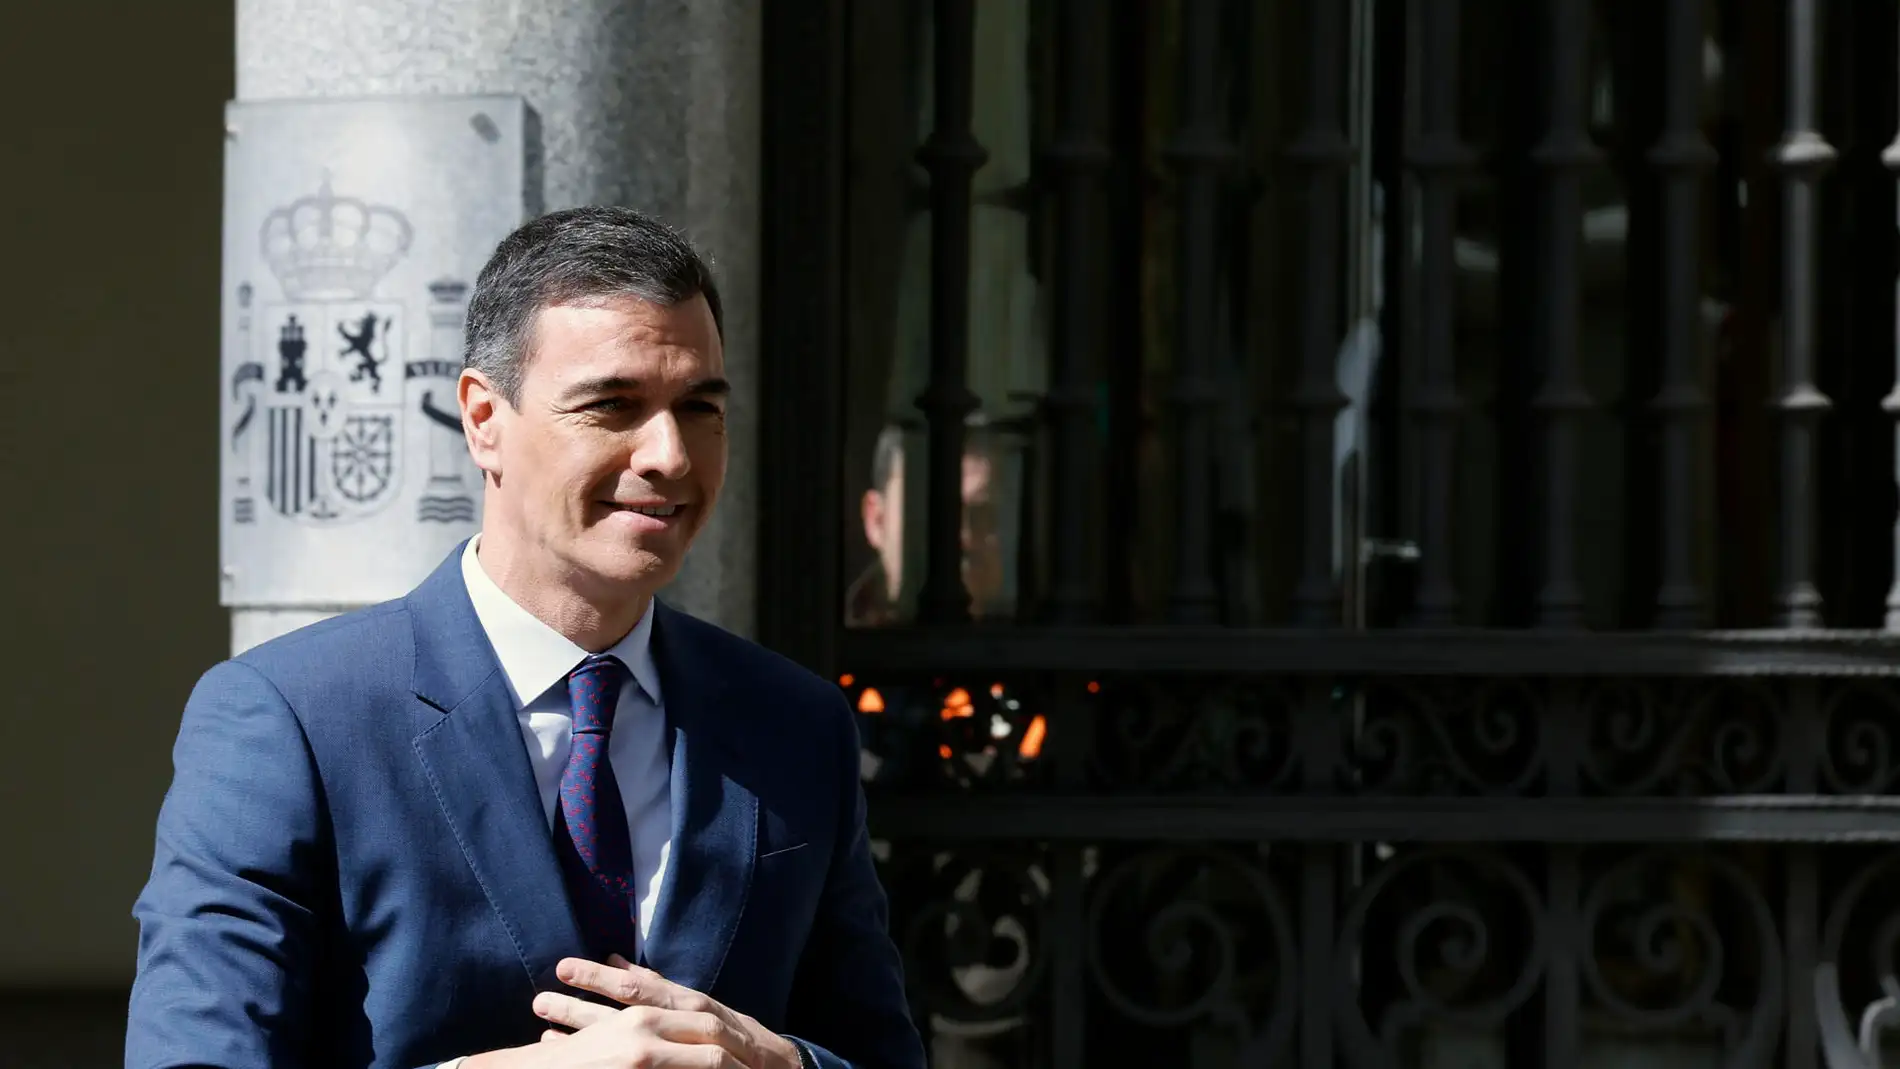 El PP solicita inhabilitar a Sánchez "entre 5 y 10 años" por conflicto de intereses del vínculo de su mujer con Globalia